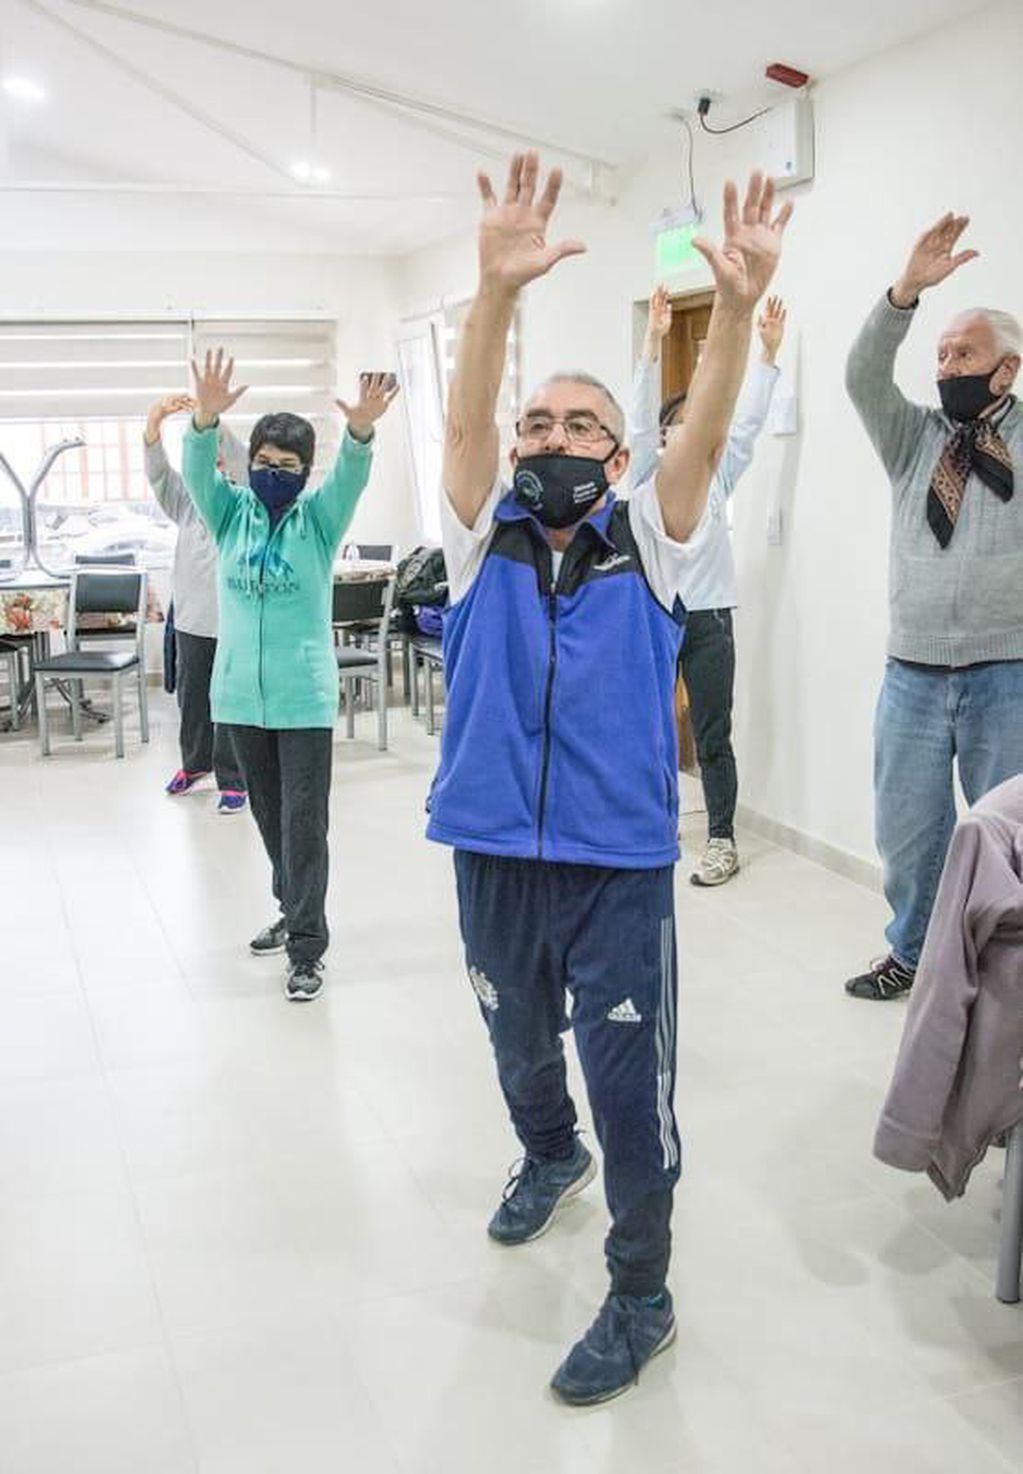 Se reanudaron las actividades deportivas para adultos mayores impulsadas por la Municipalidad de Ushuaia